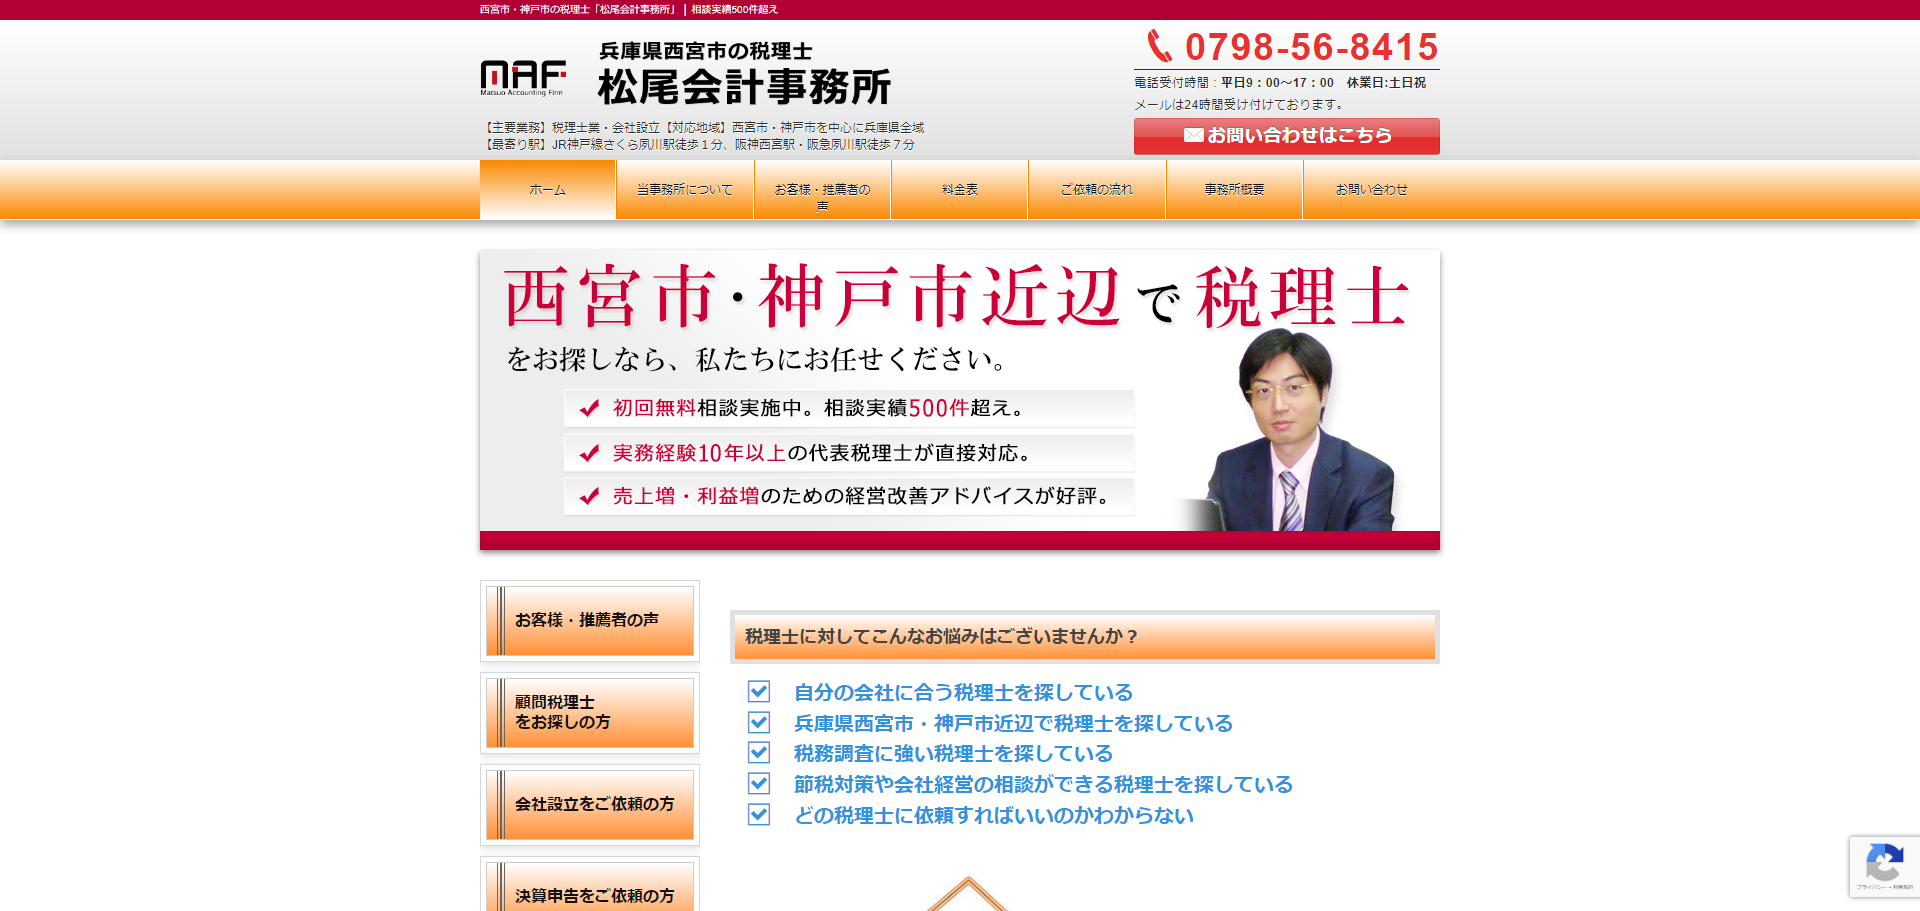 松尾会計事務所のホームページ制作